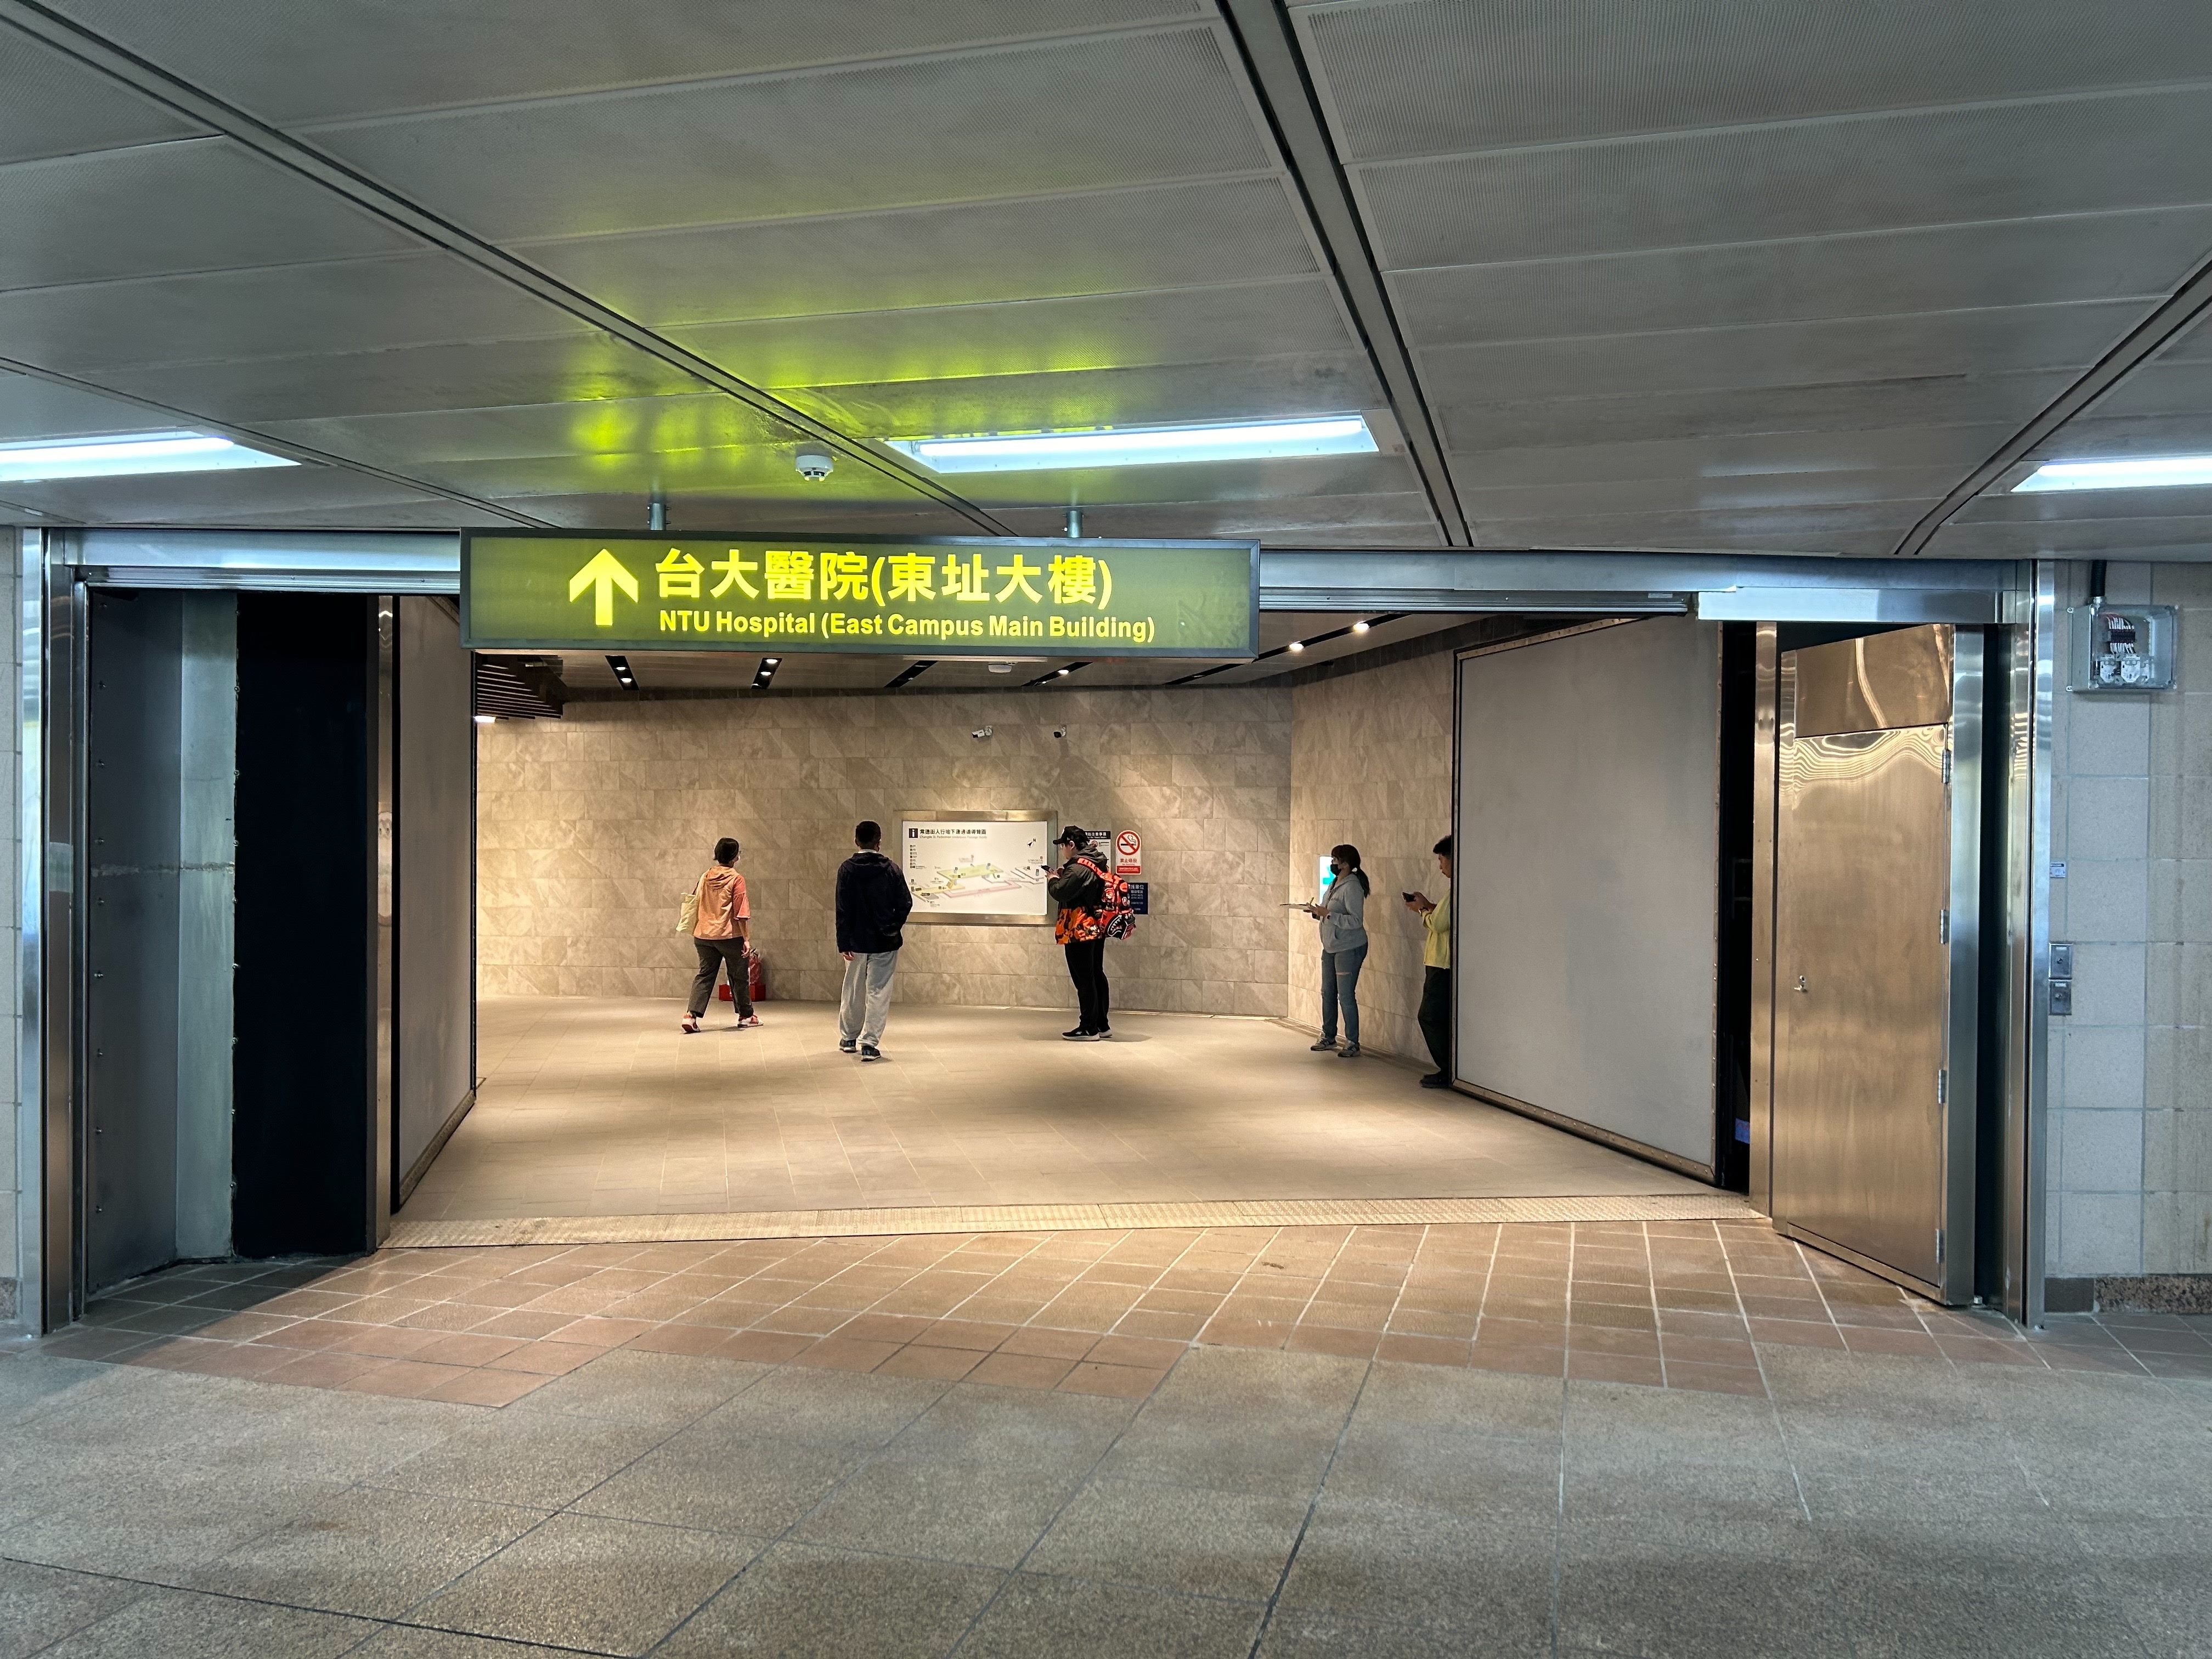 台北常德街人行地下道開放通行  提供行人更友善的無障礙...